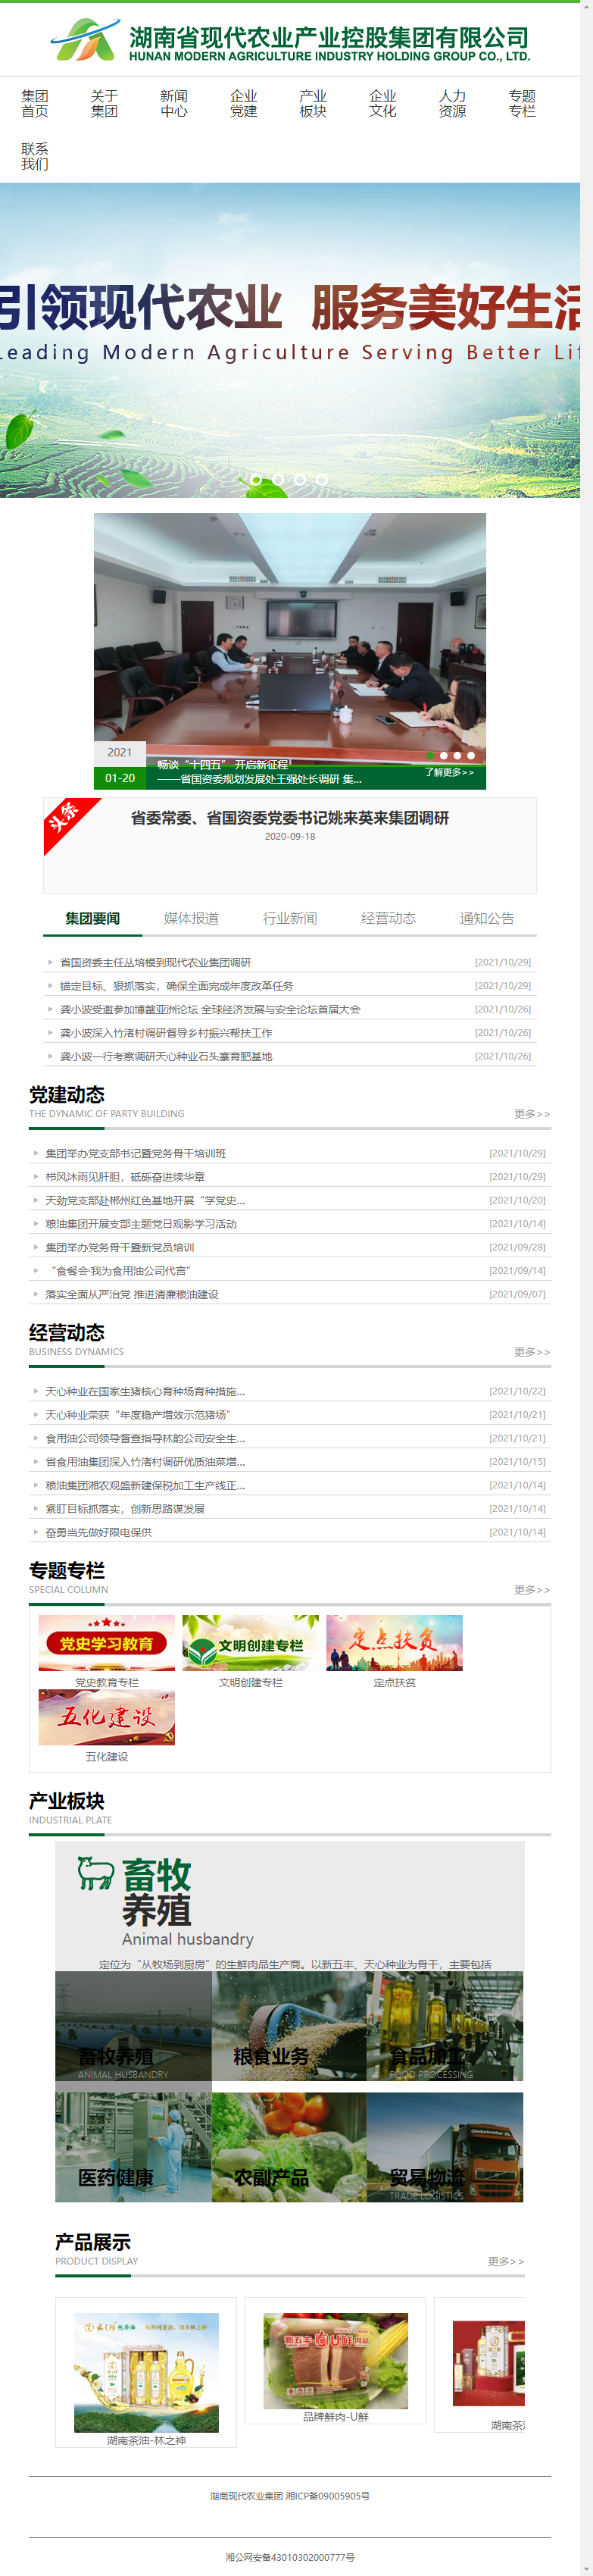 湖南省现代农业产业控股集团有限公司网站案例